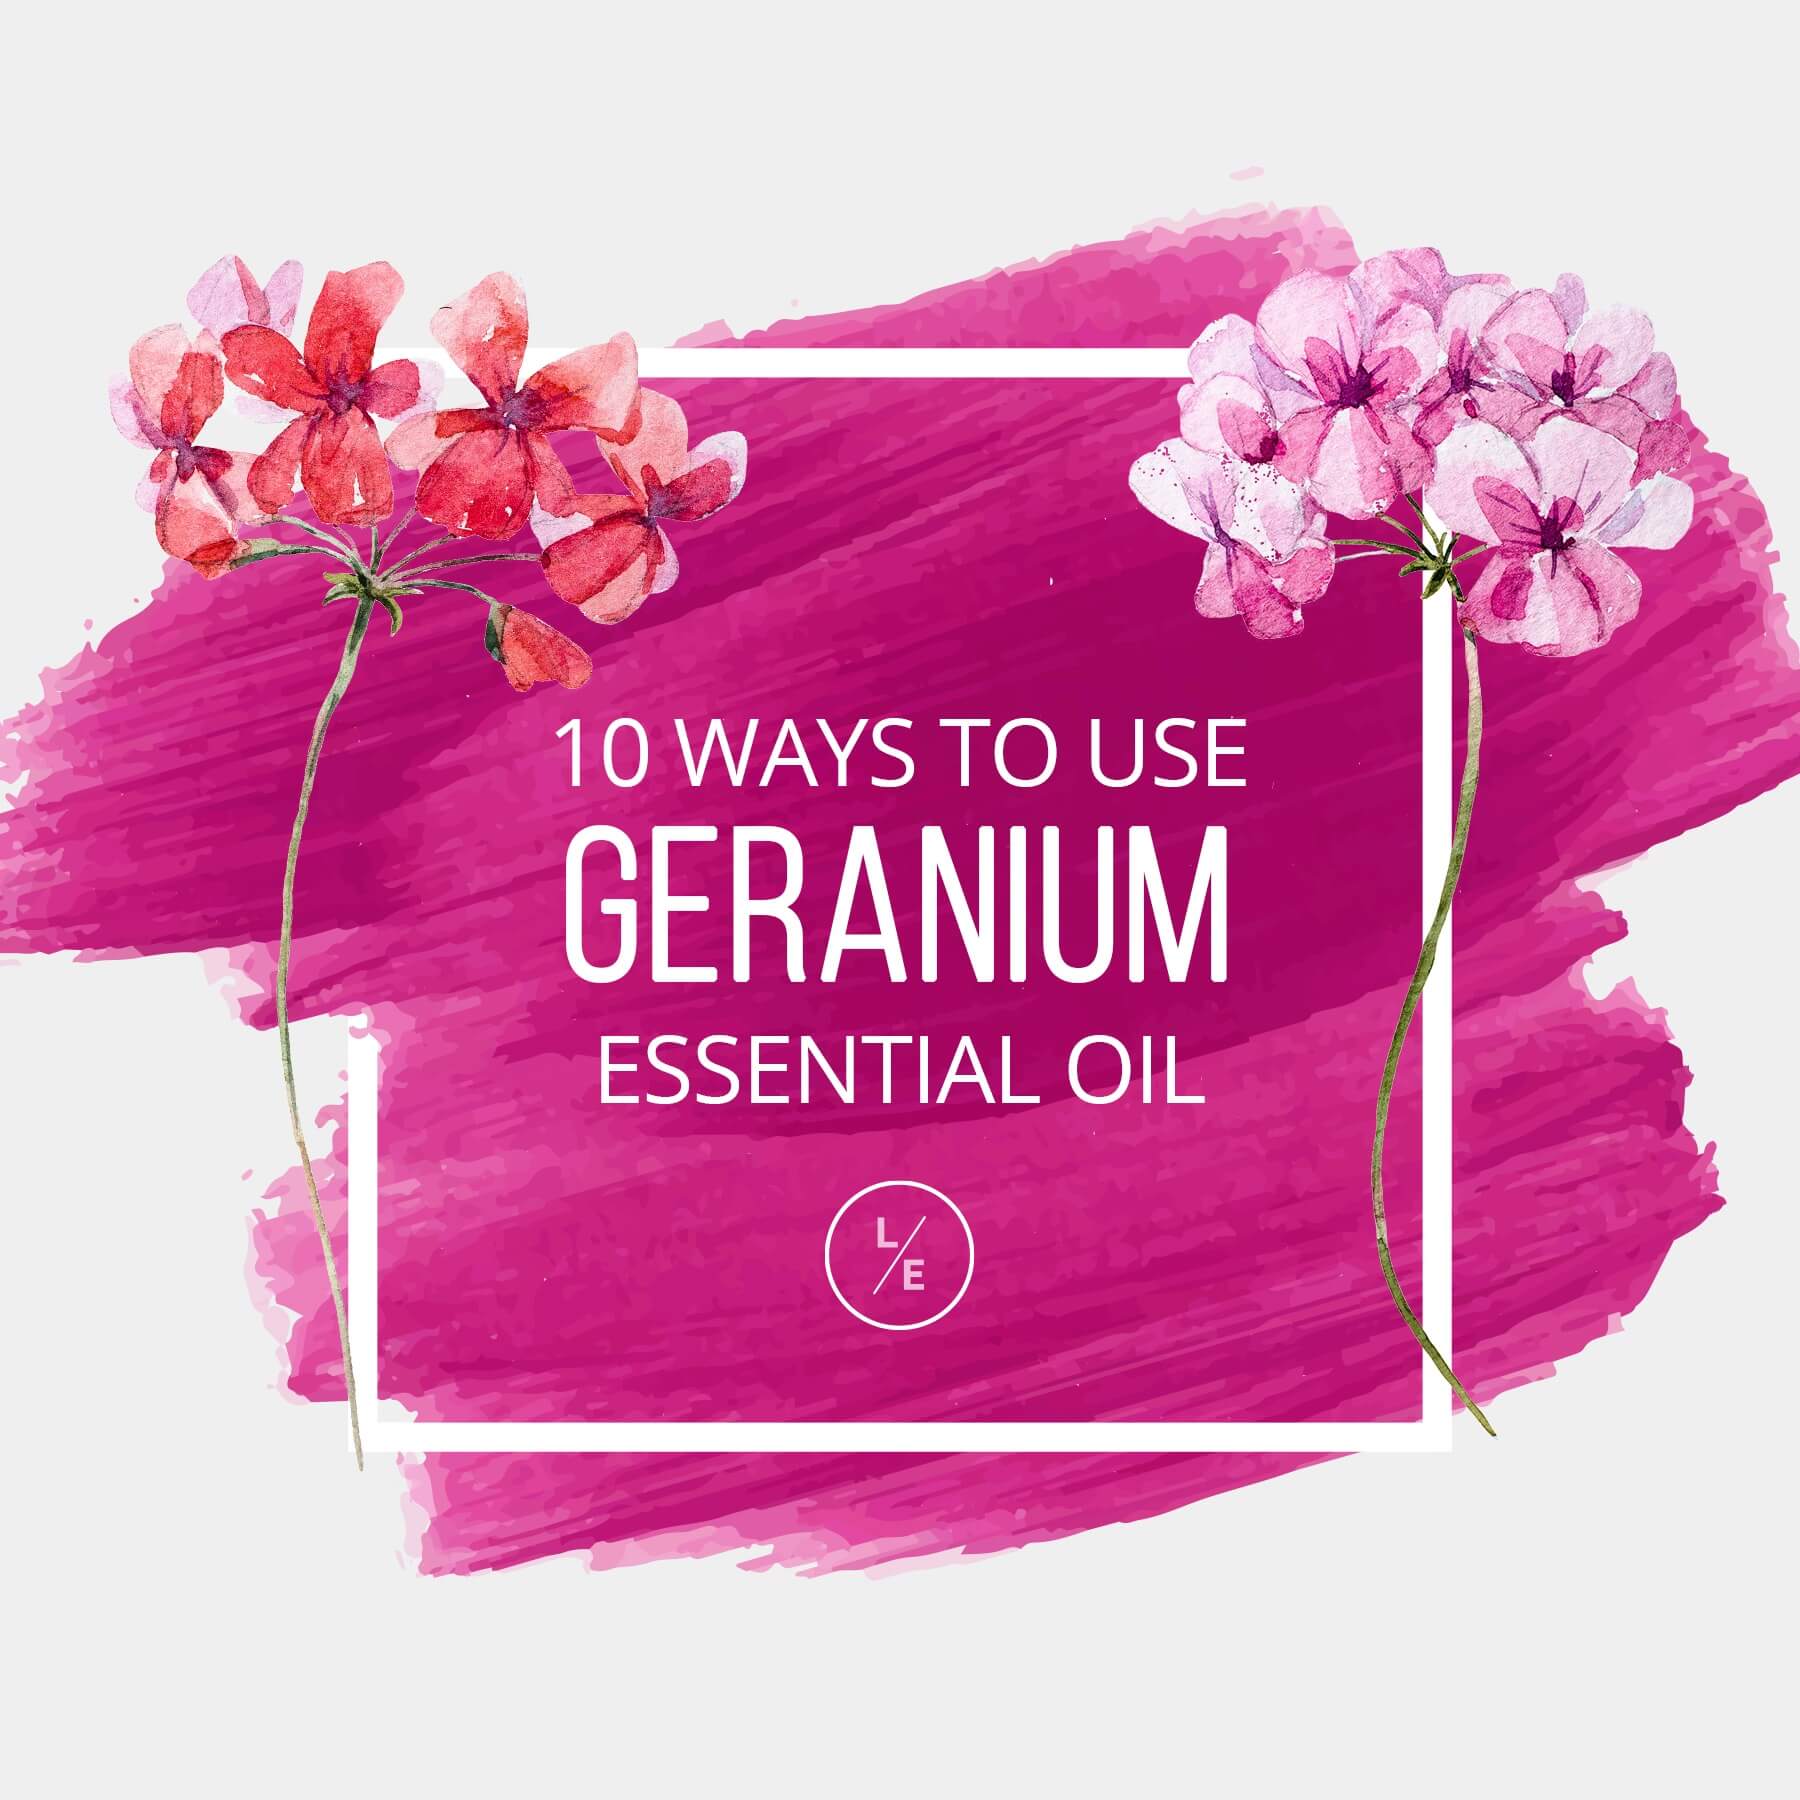 10 Ways to Use Geranium Essential Oil